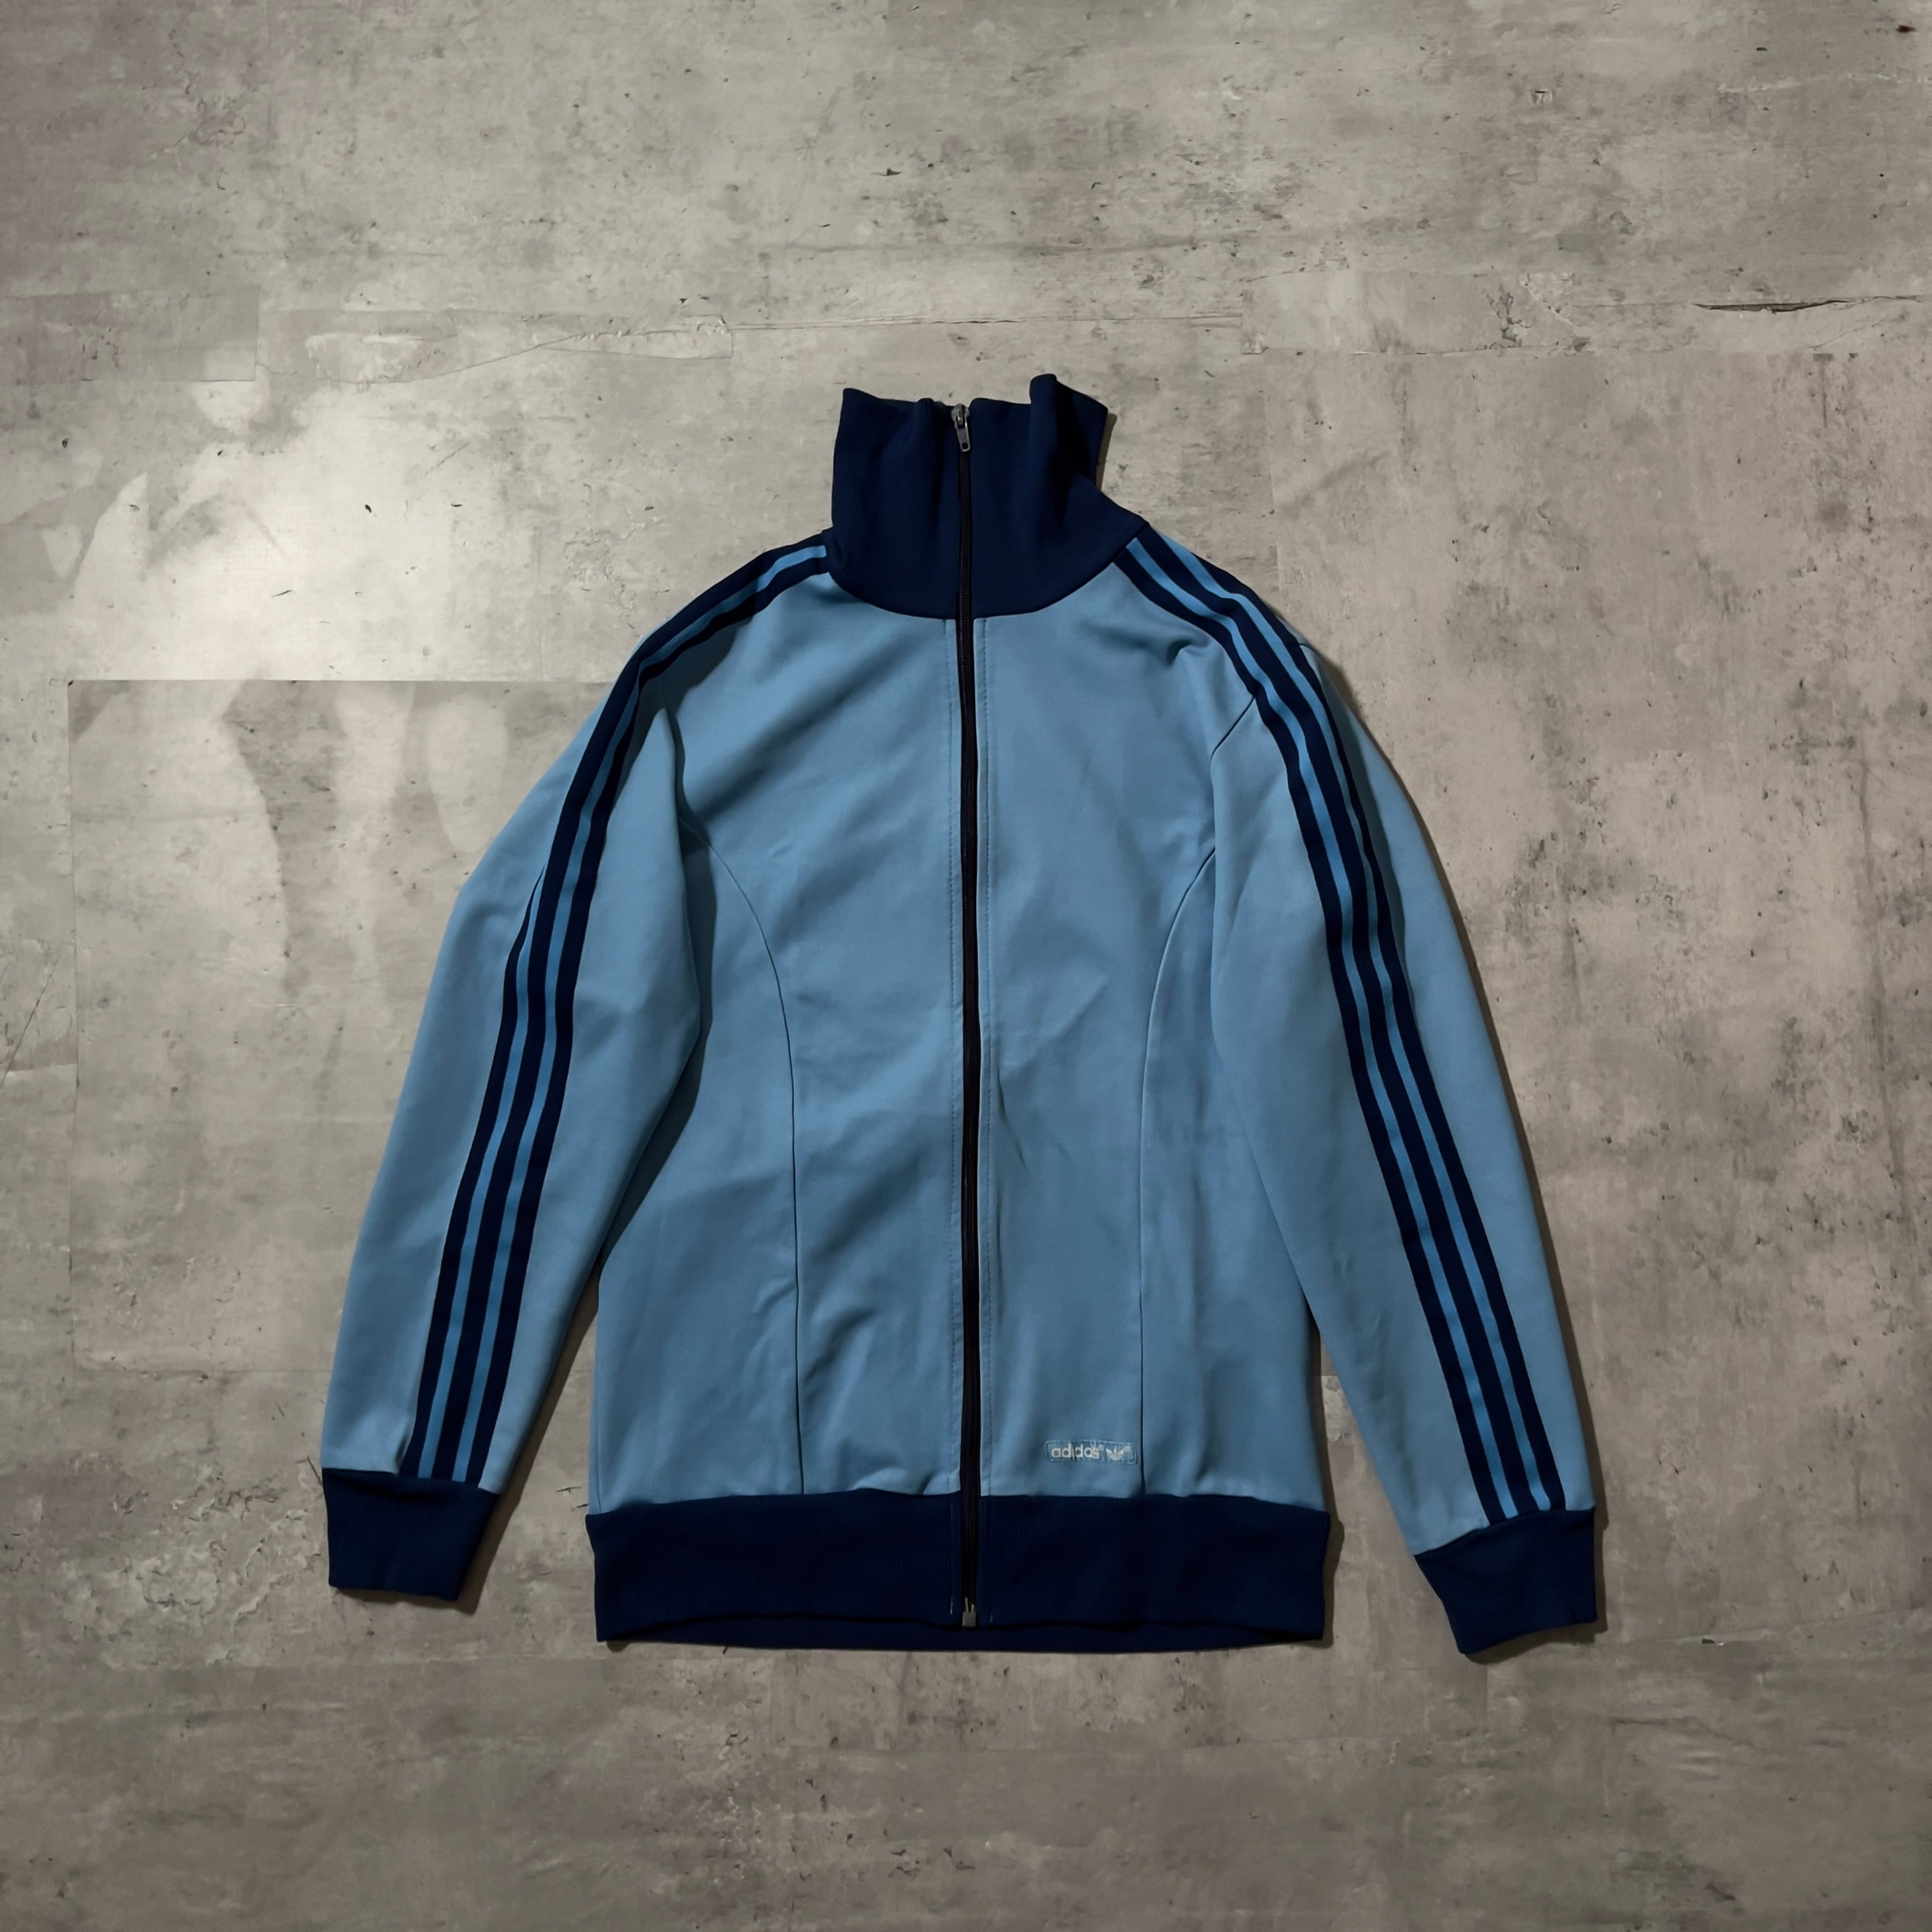 70s “adidas” blue color track jacket 70年代 アディダス ブルー トラックジャケット 西ドイツ企画 anti  knovum（アンタイノーム）